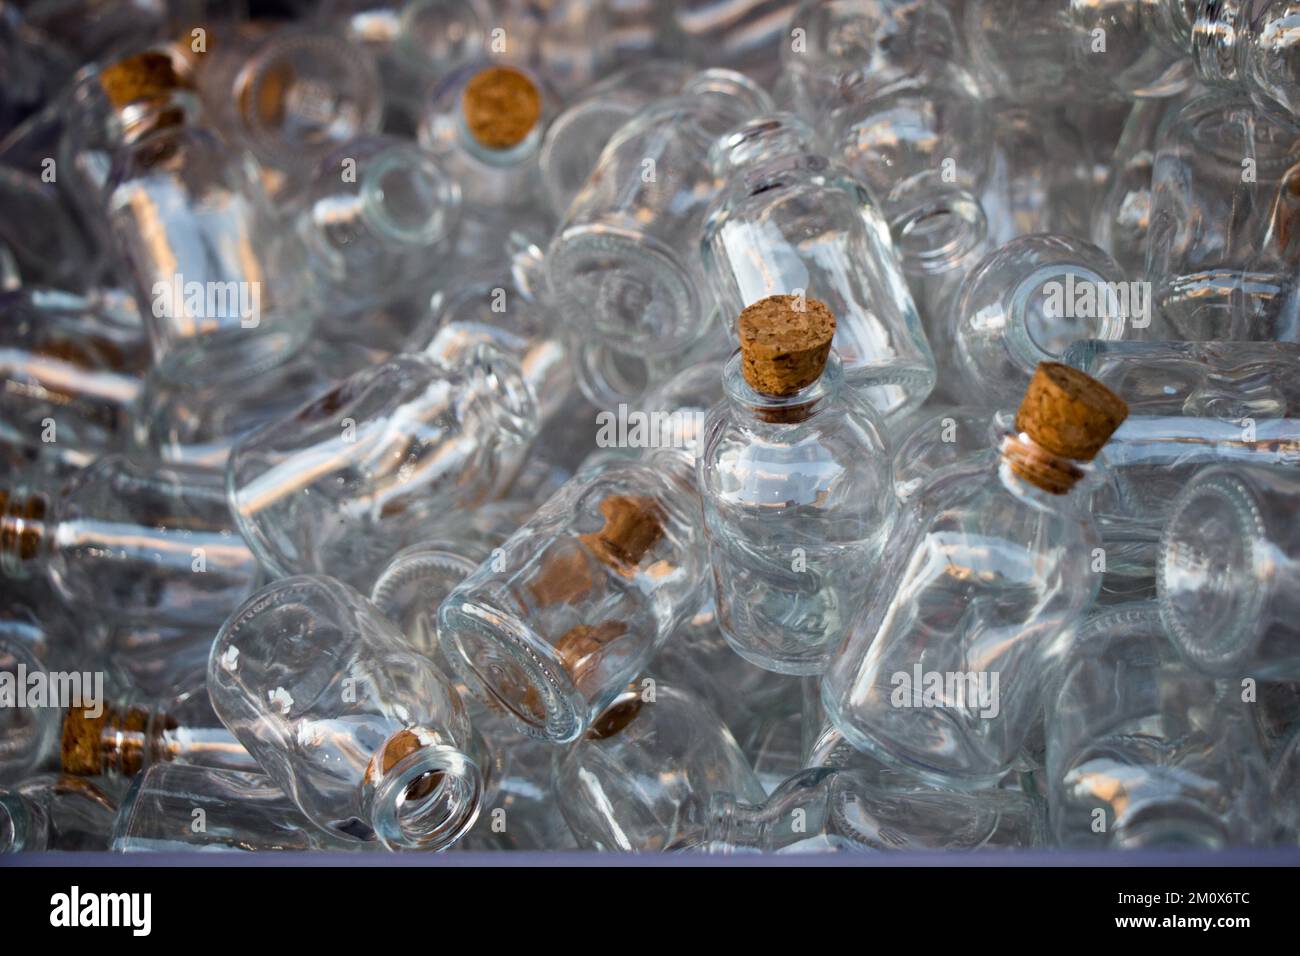 Un Envase De Plástico Transparente Con Tapa. Fotos, retratos